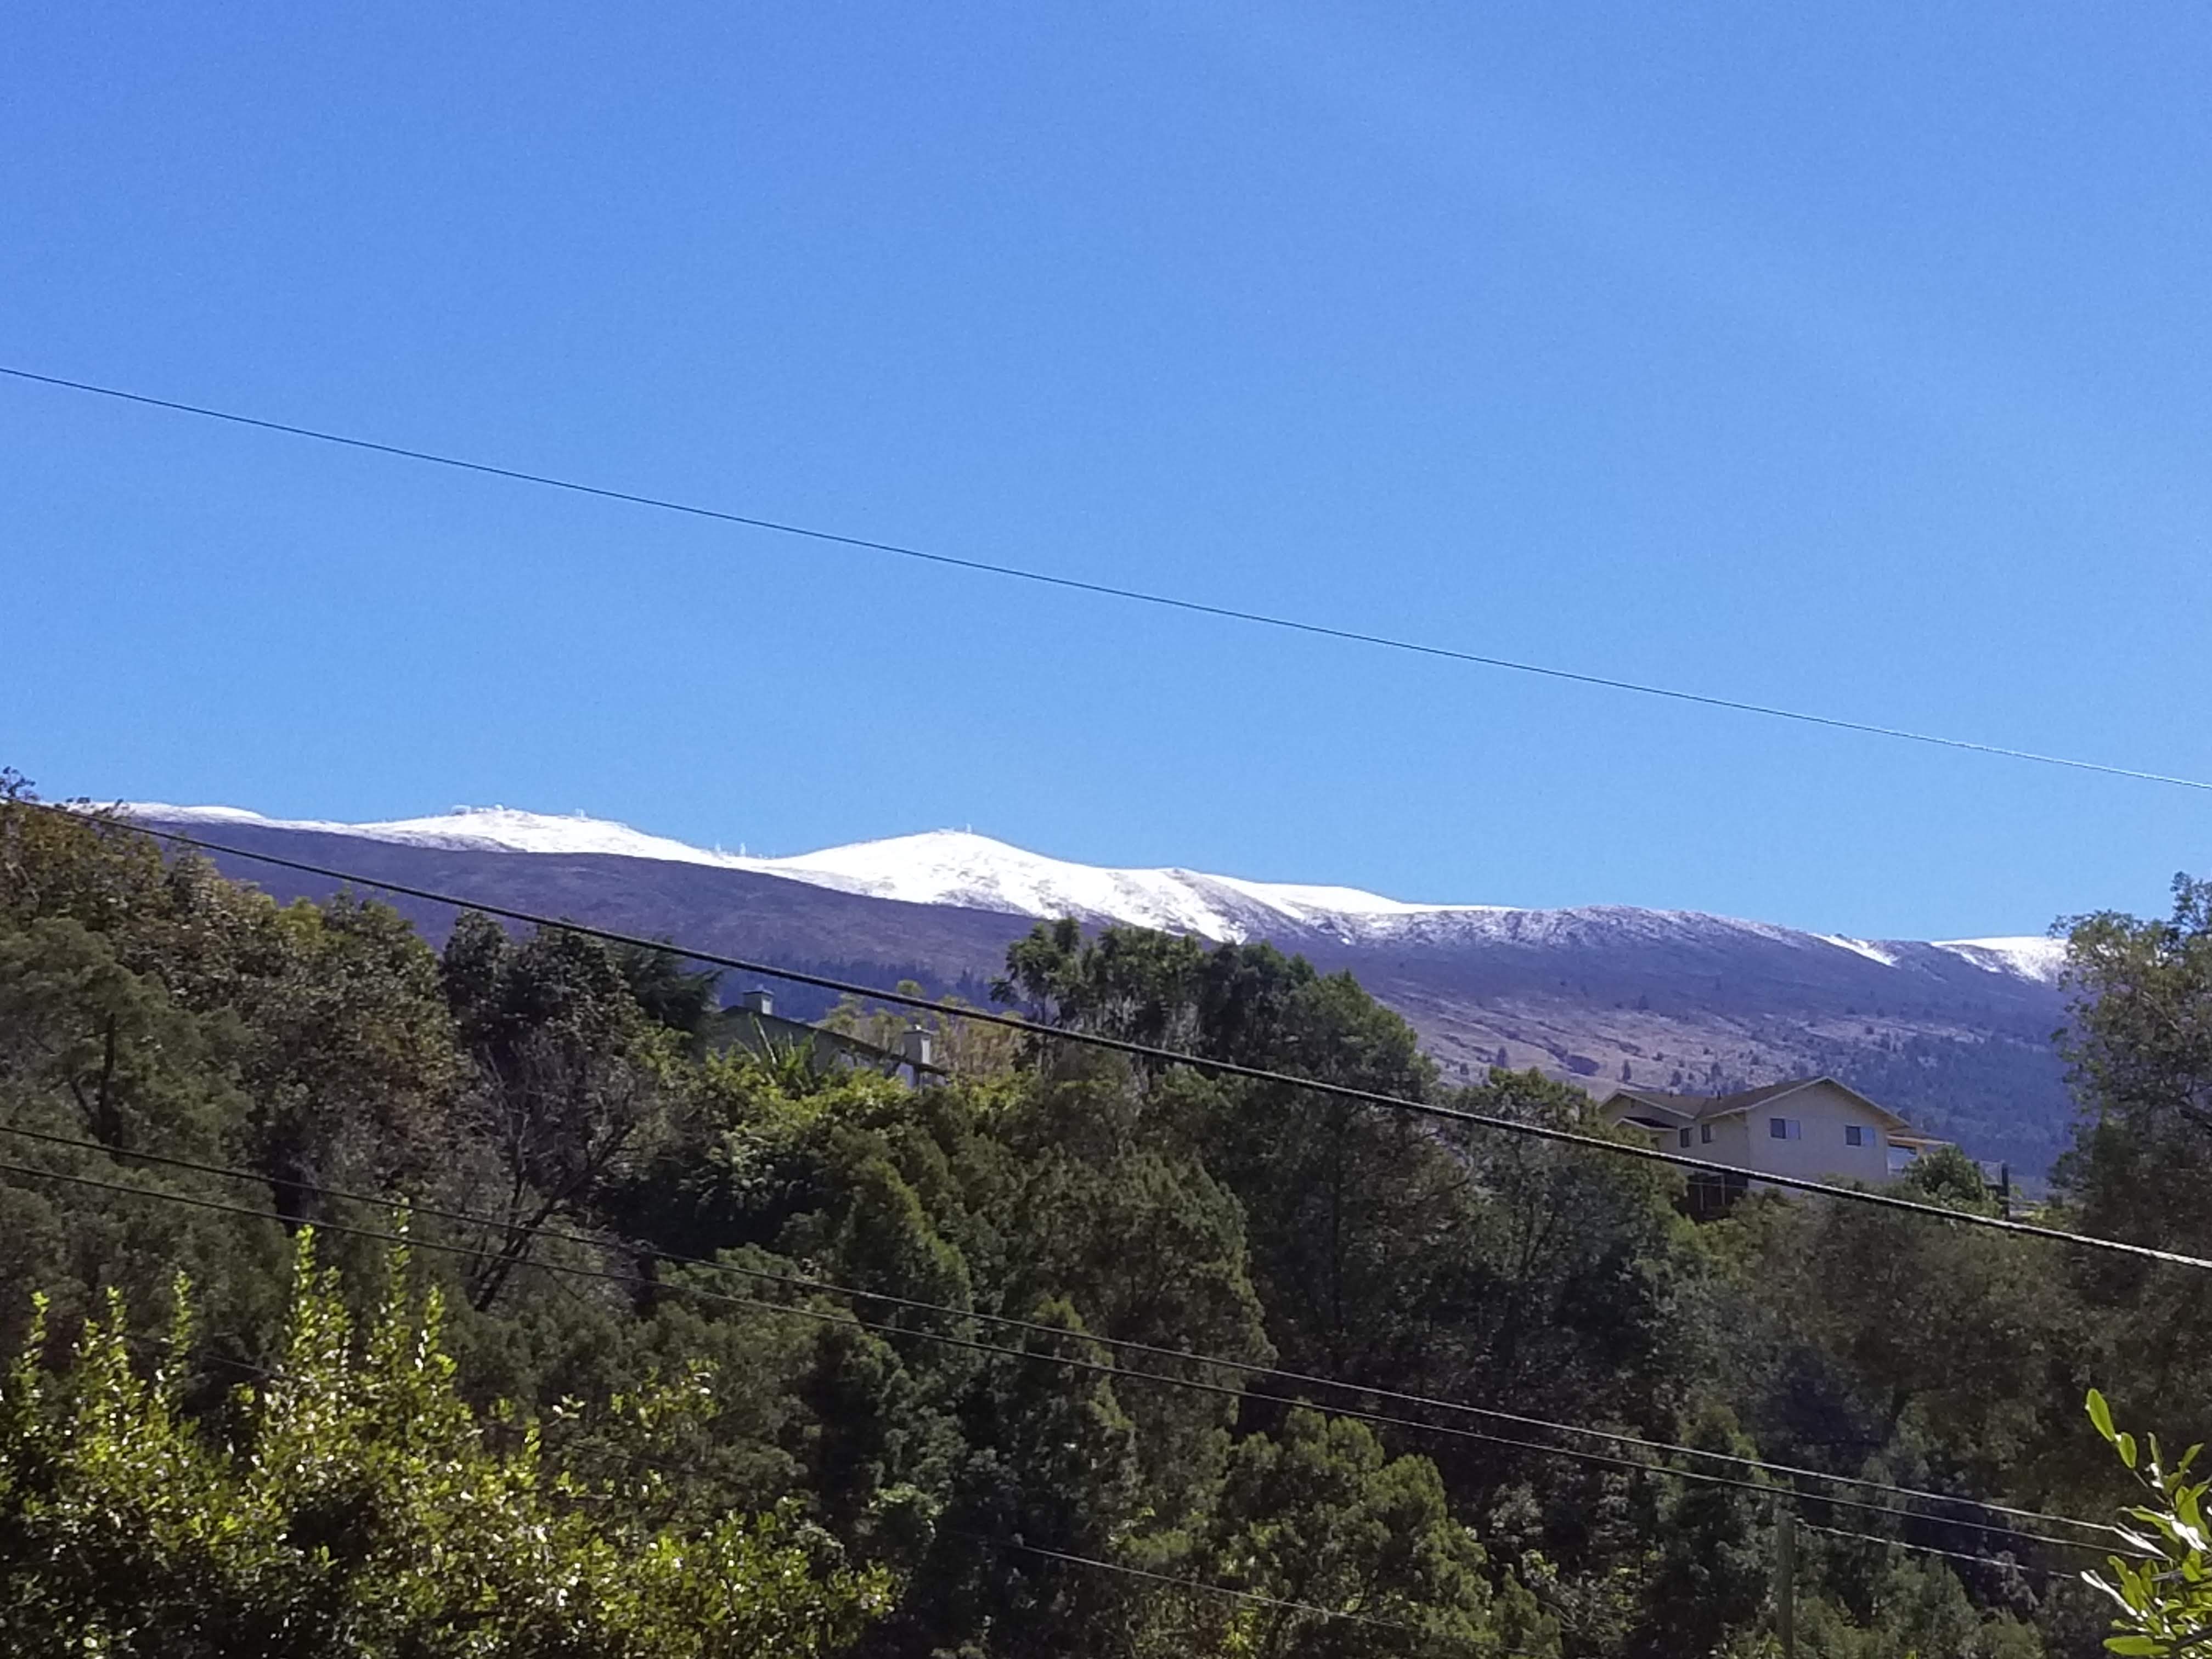 Snow on Haleakala 2/11/19